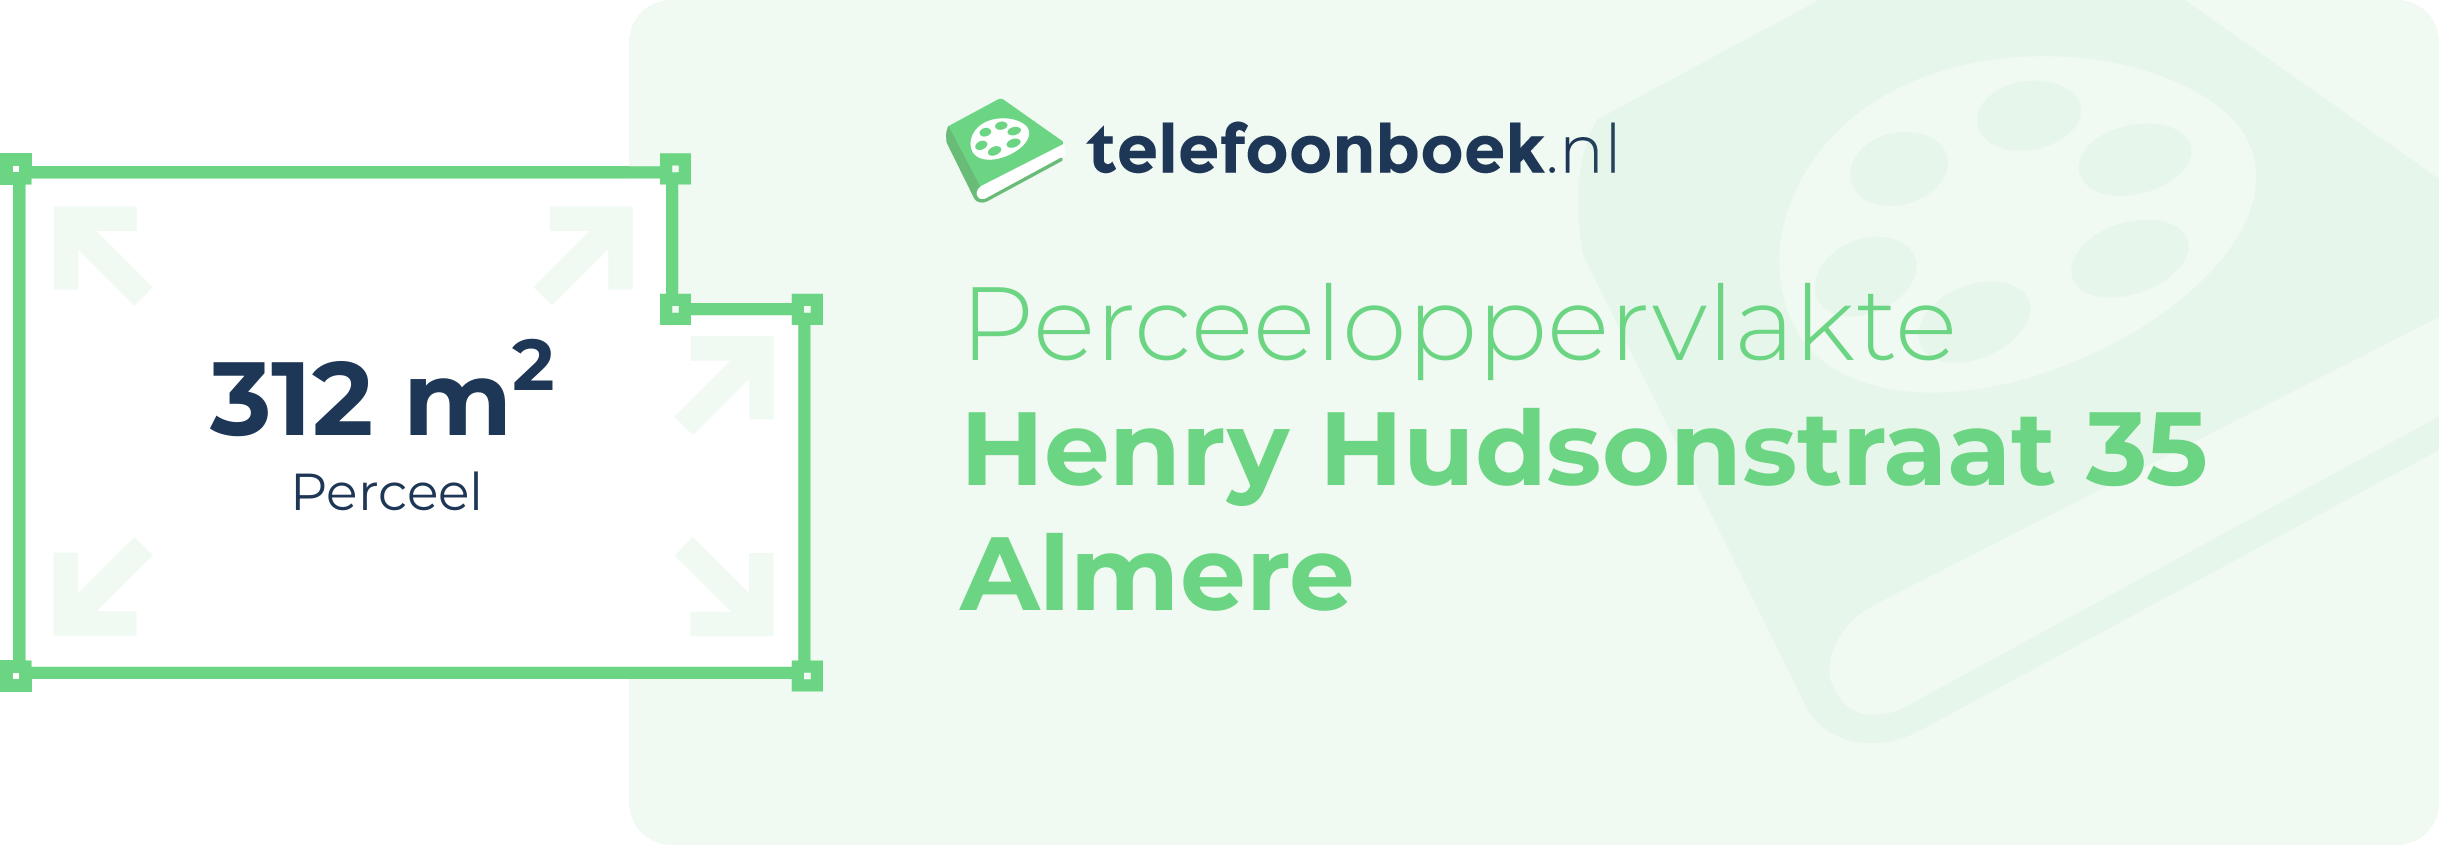 Perceeloppervlakte Henry Hudsonstraat 35 Almere